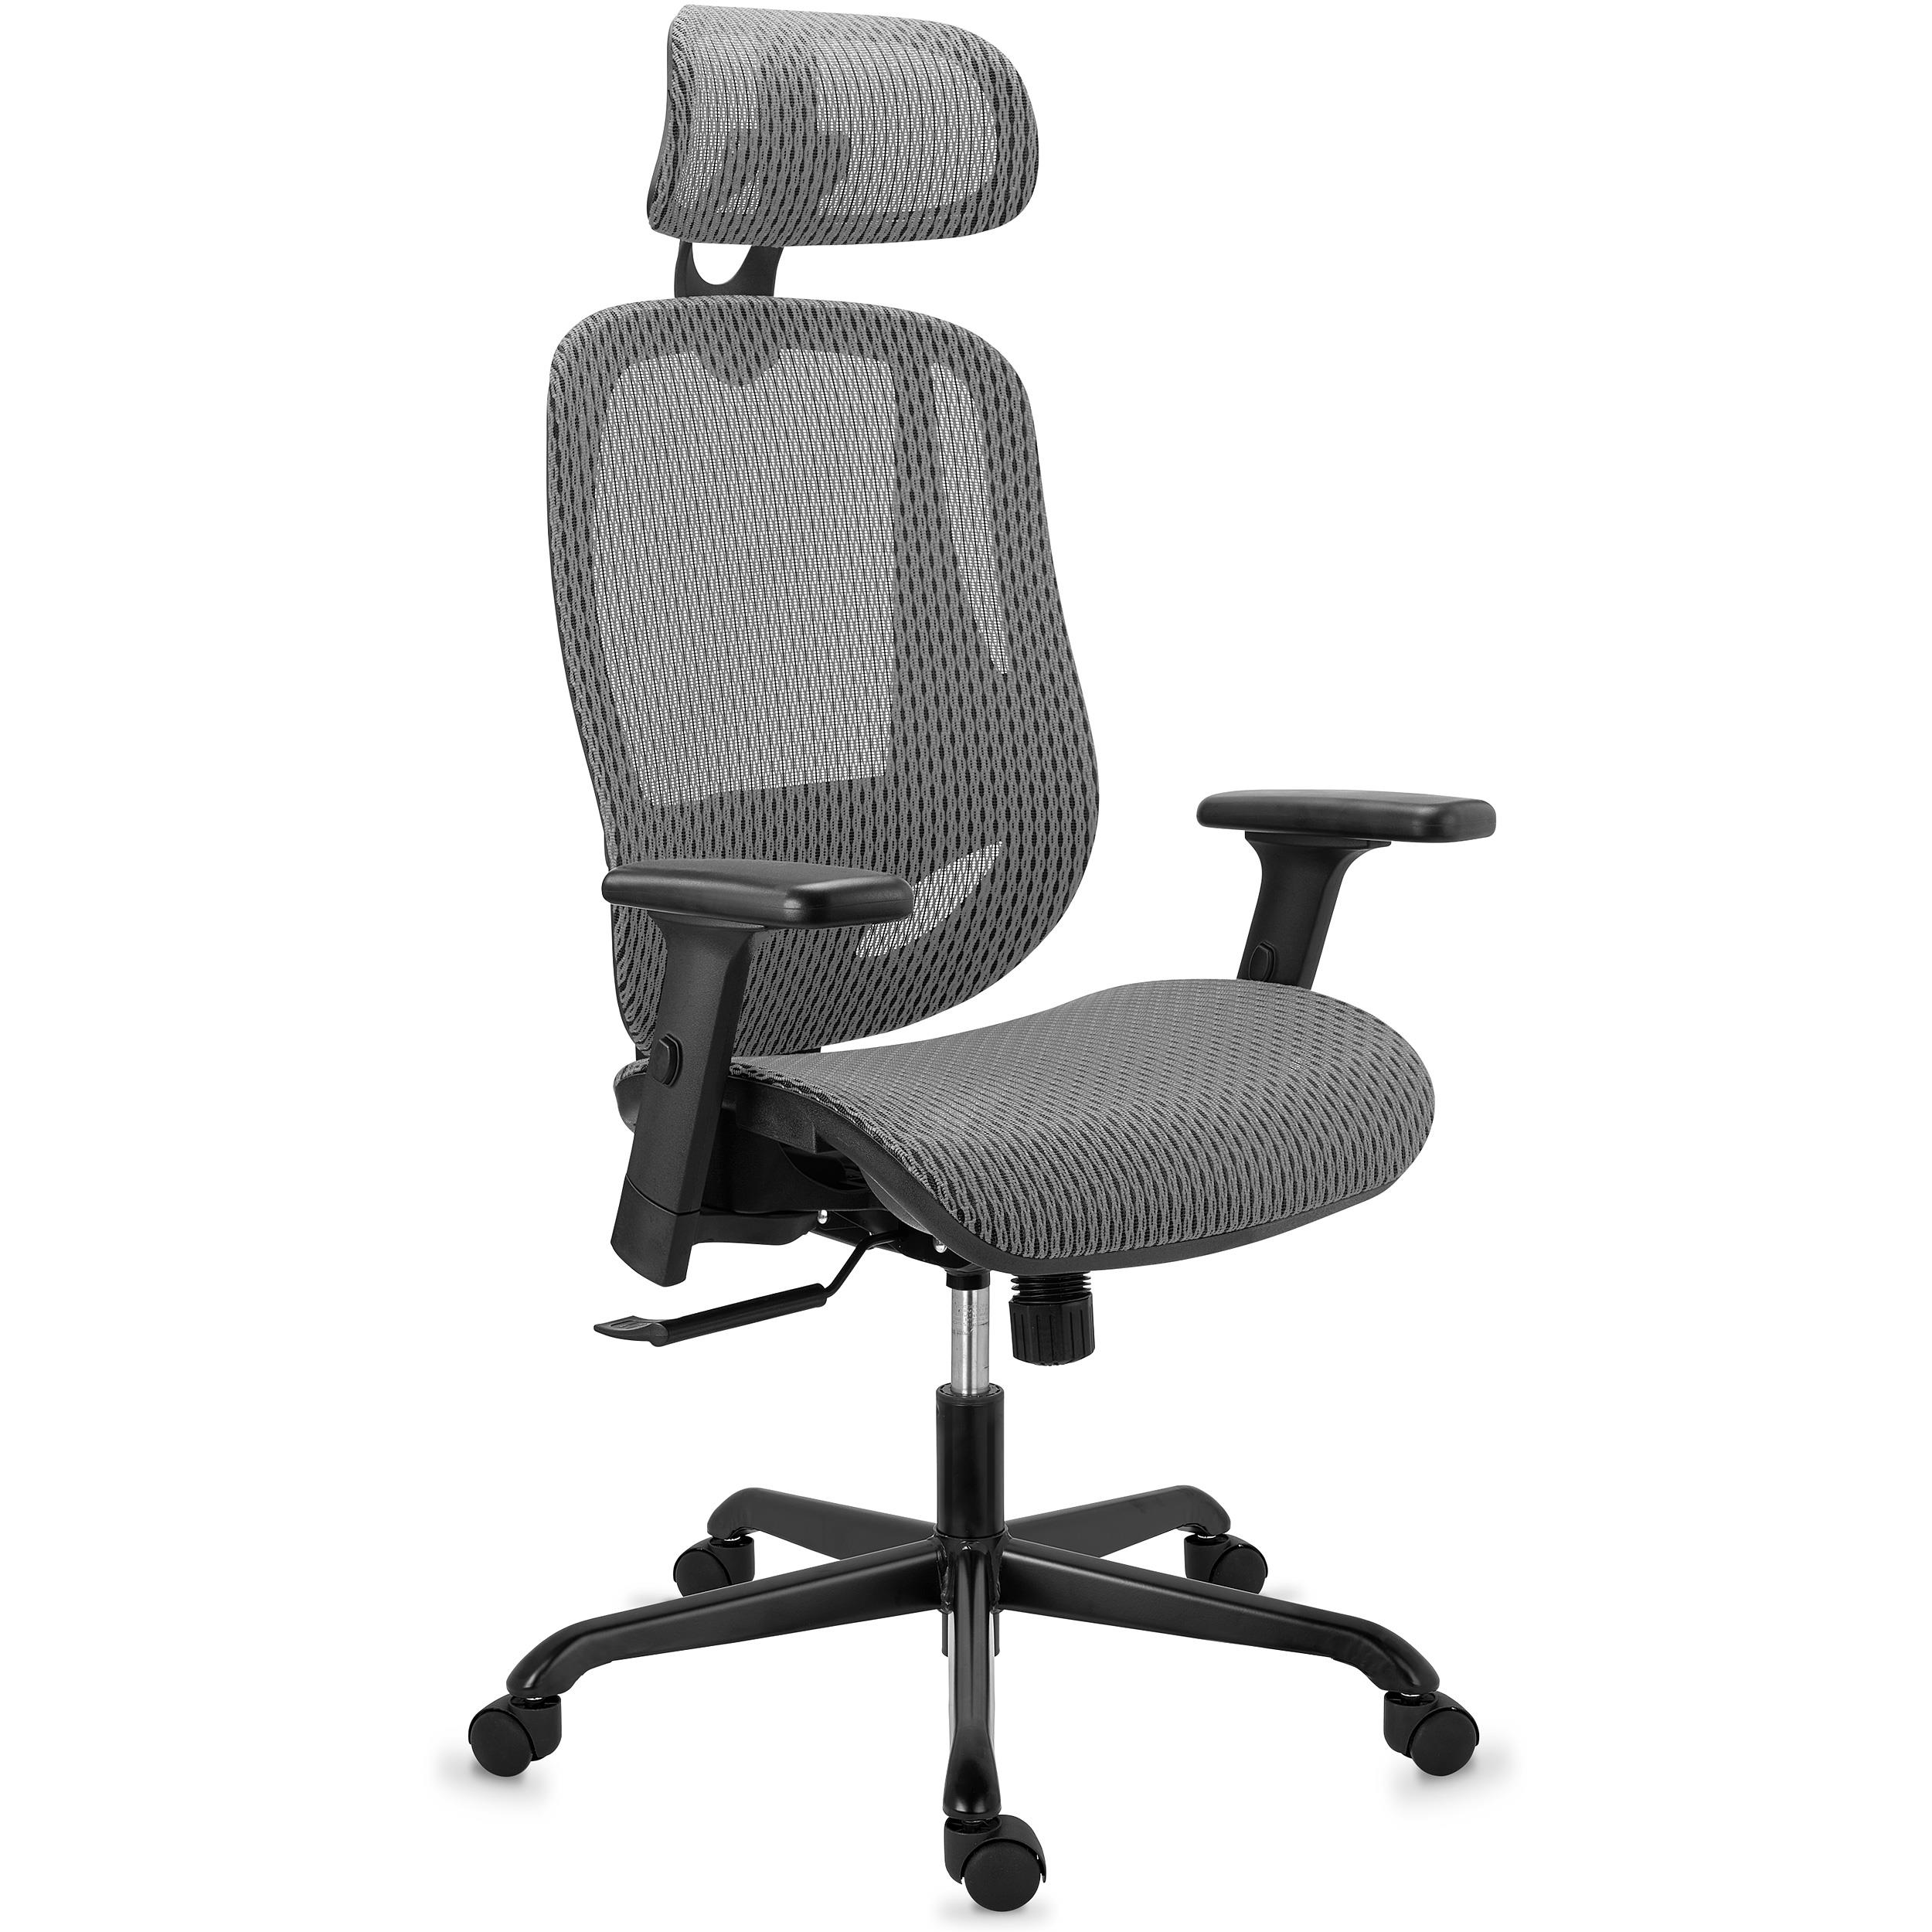 Chaise Ergonomique NOVA, Confortable et Ajustable, Grande Qualité et Design, en Maille, Gris